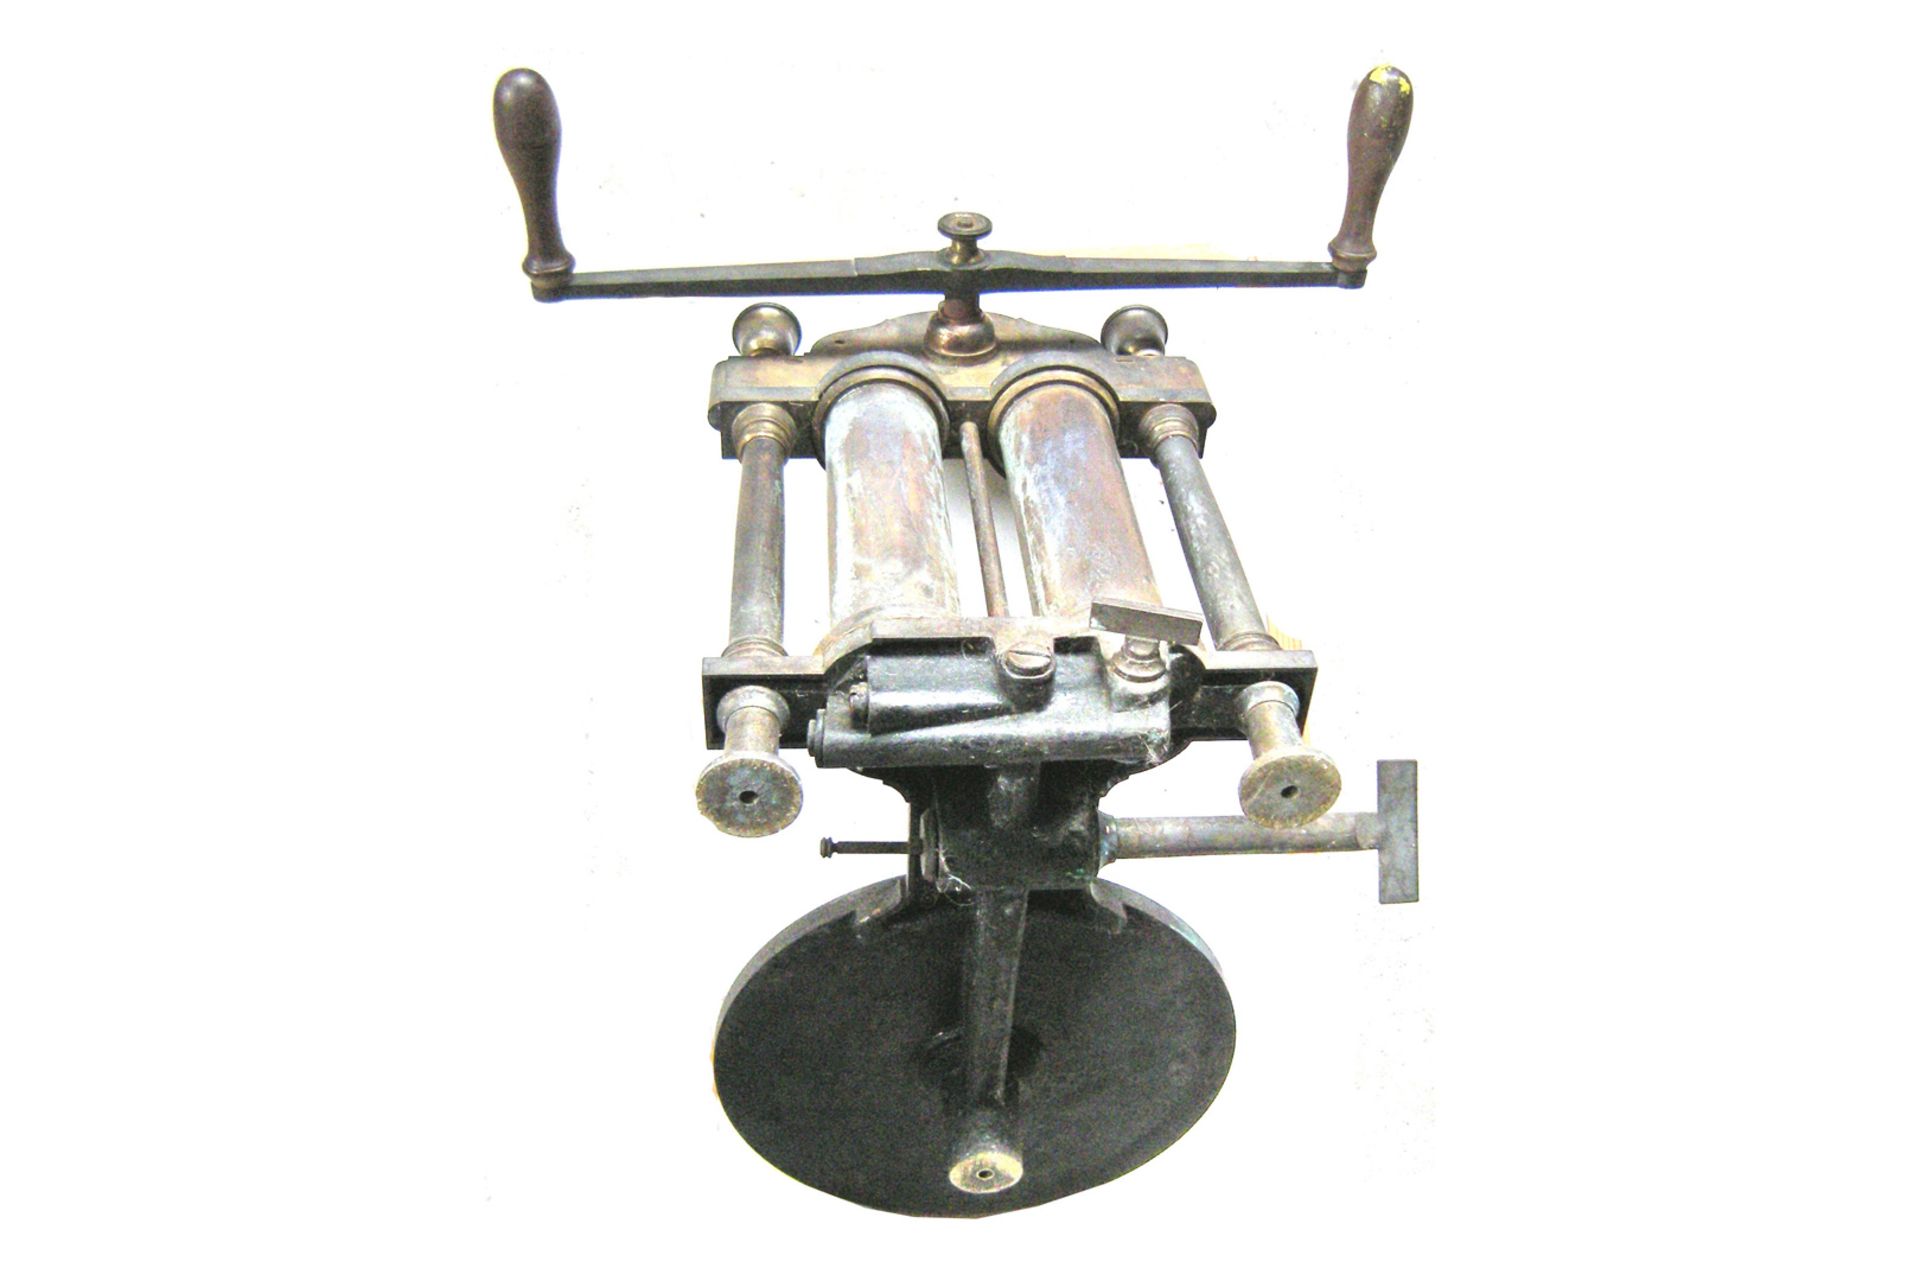 Zweistiefelige Vakuumpumpe, ohne Glaskolben, 1880, Abmessung 50x33x43cm, ca. 10kg - Bild 7 aus 8